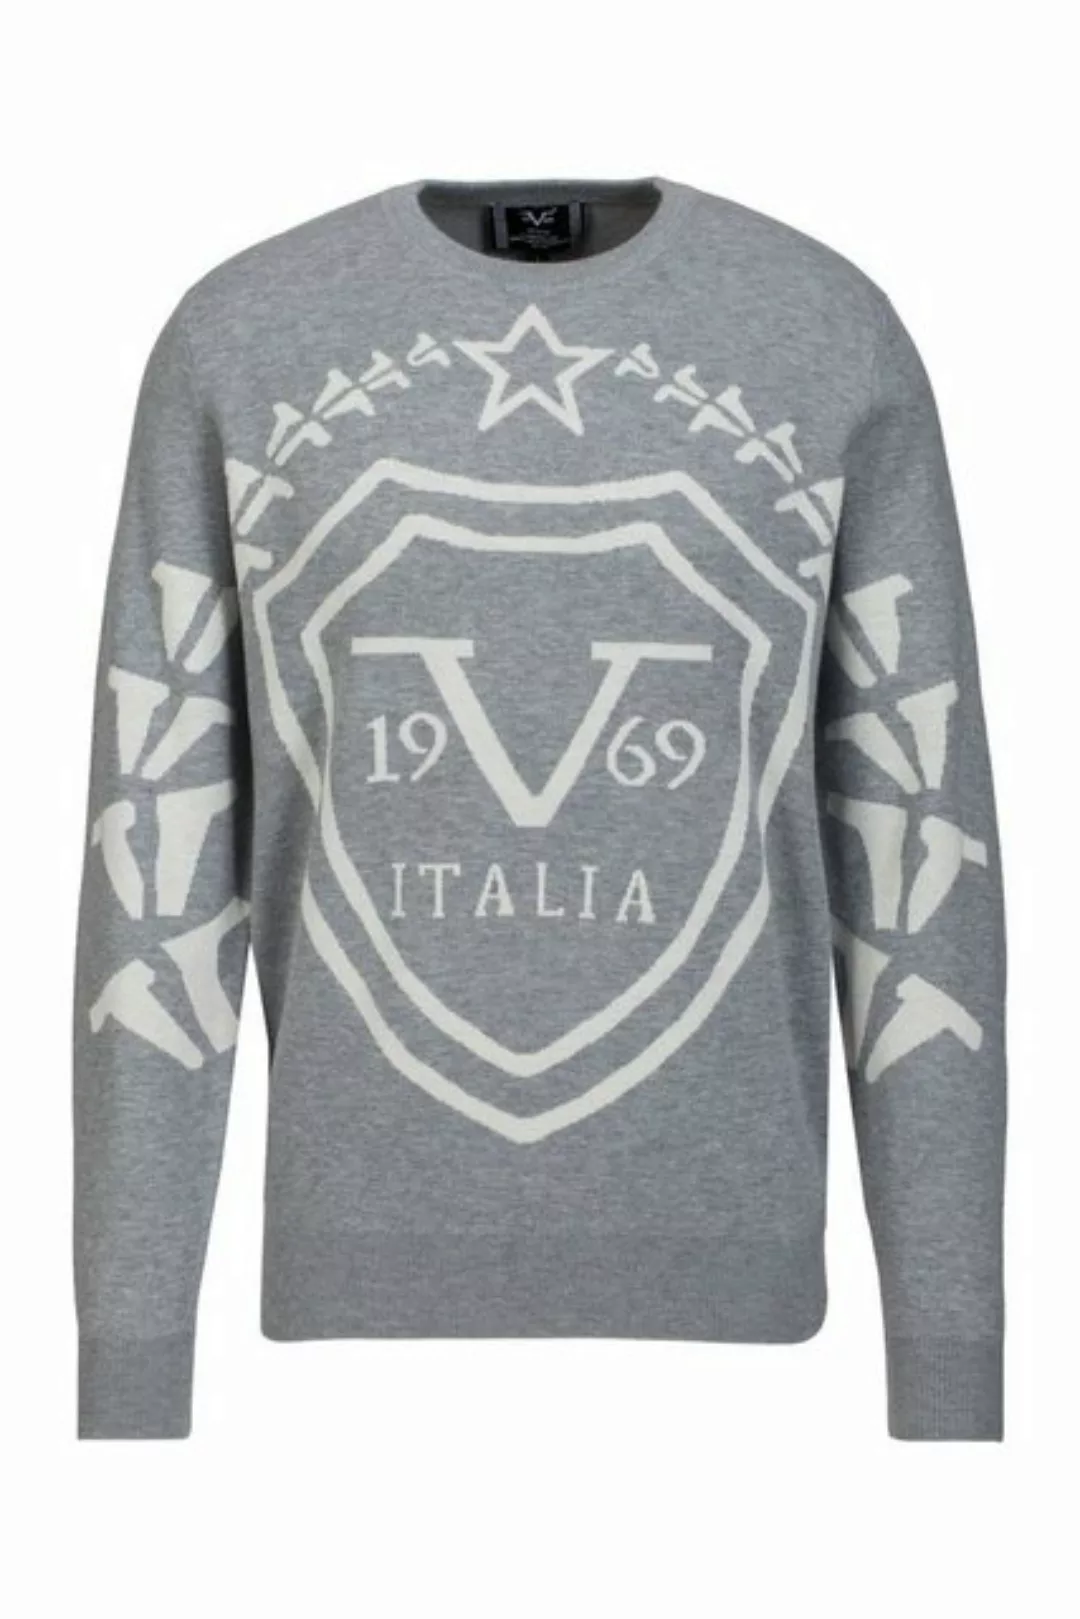 19V69 Italia by Versace Rundhalspullover by Versace Sportivo SRL - Enzo günstig online kaufen